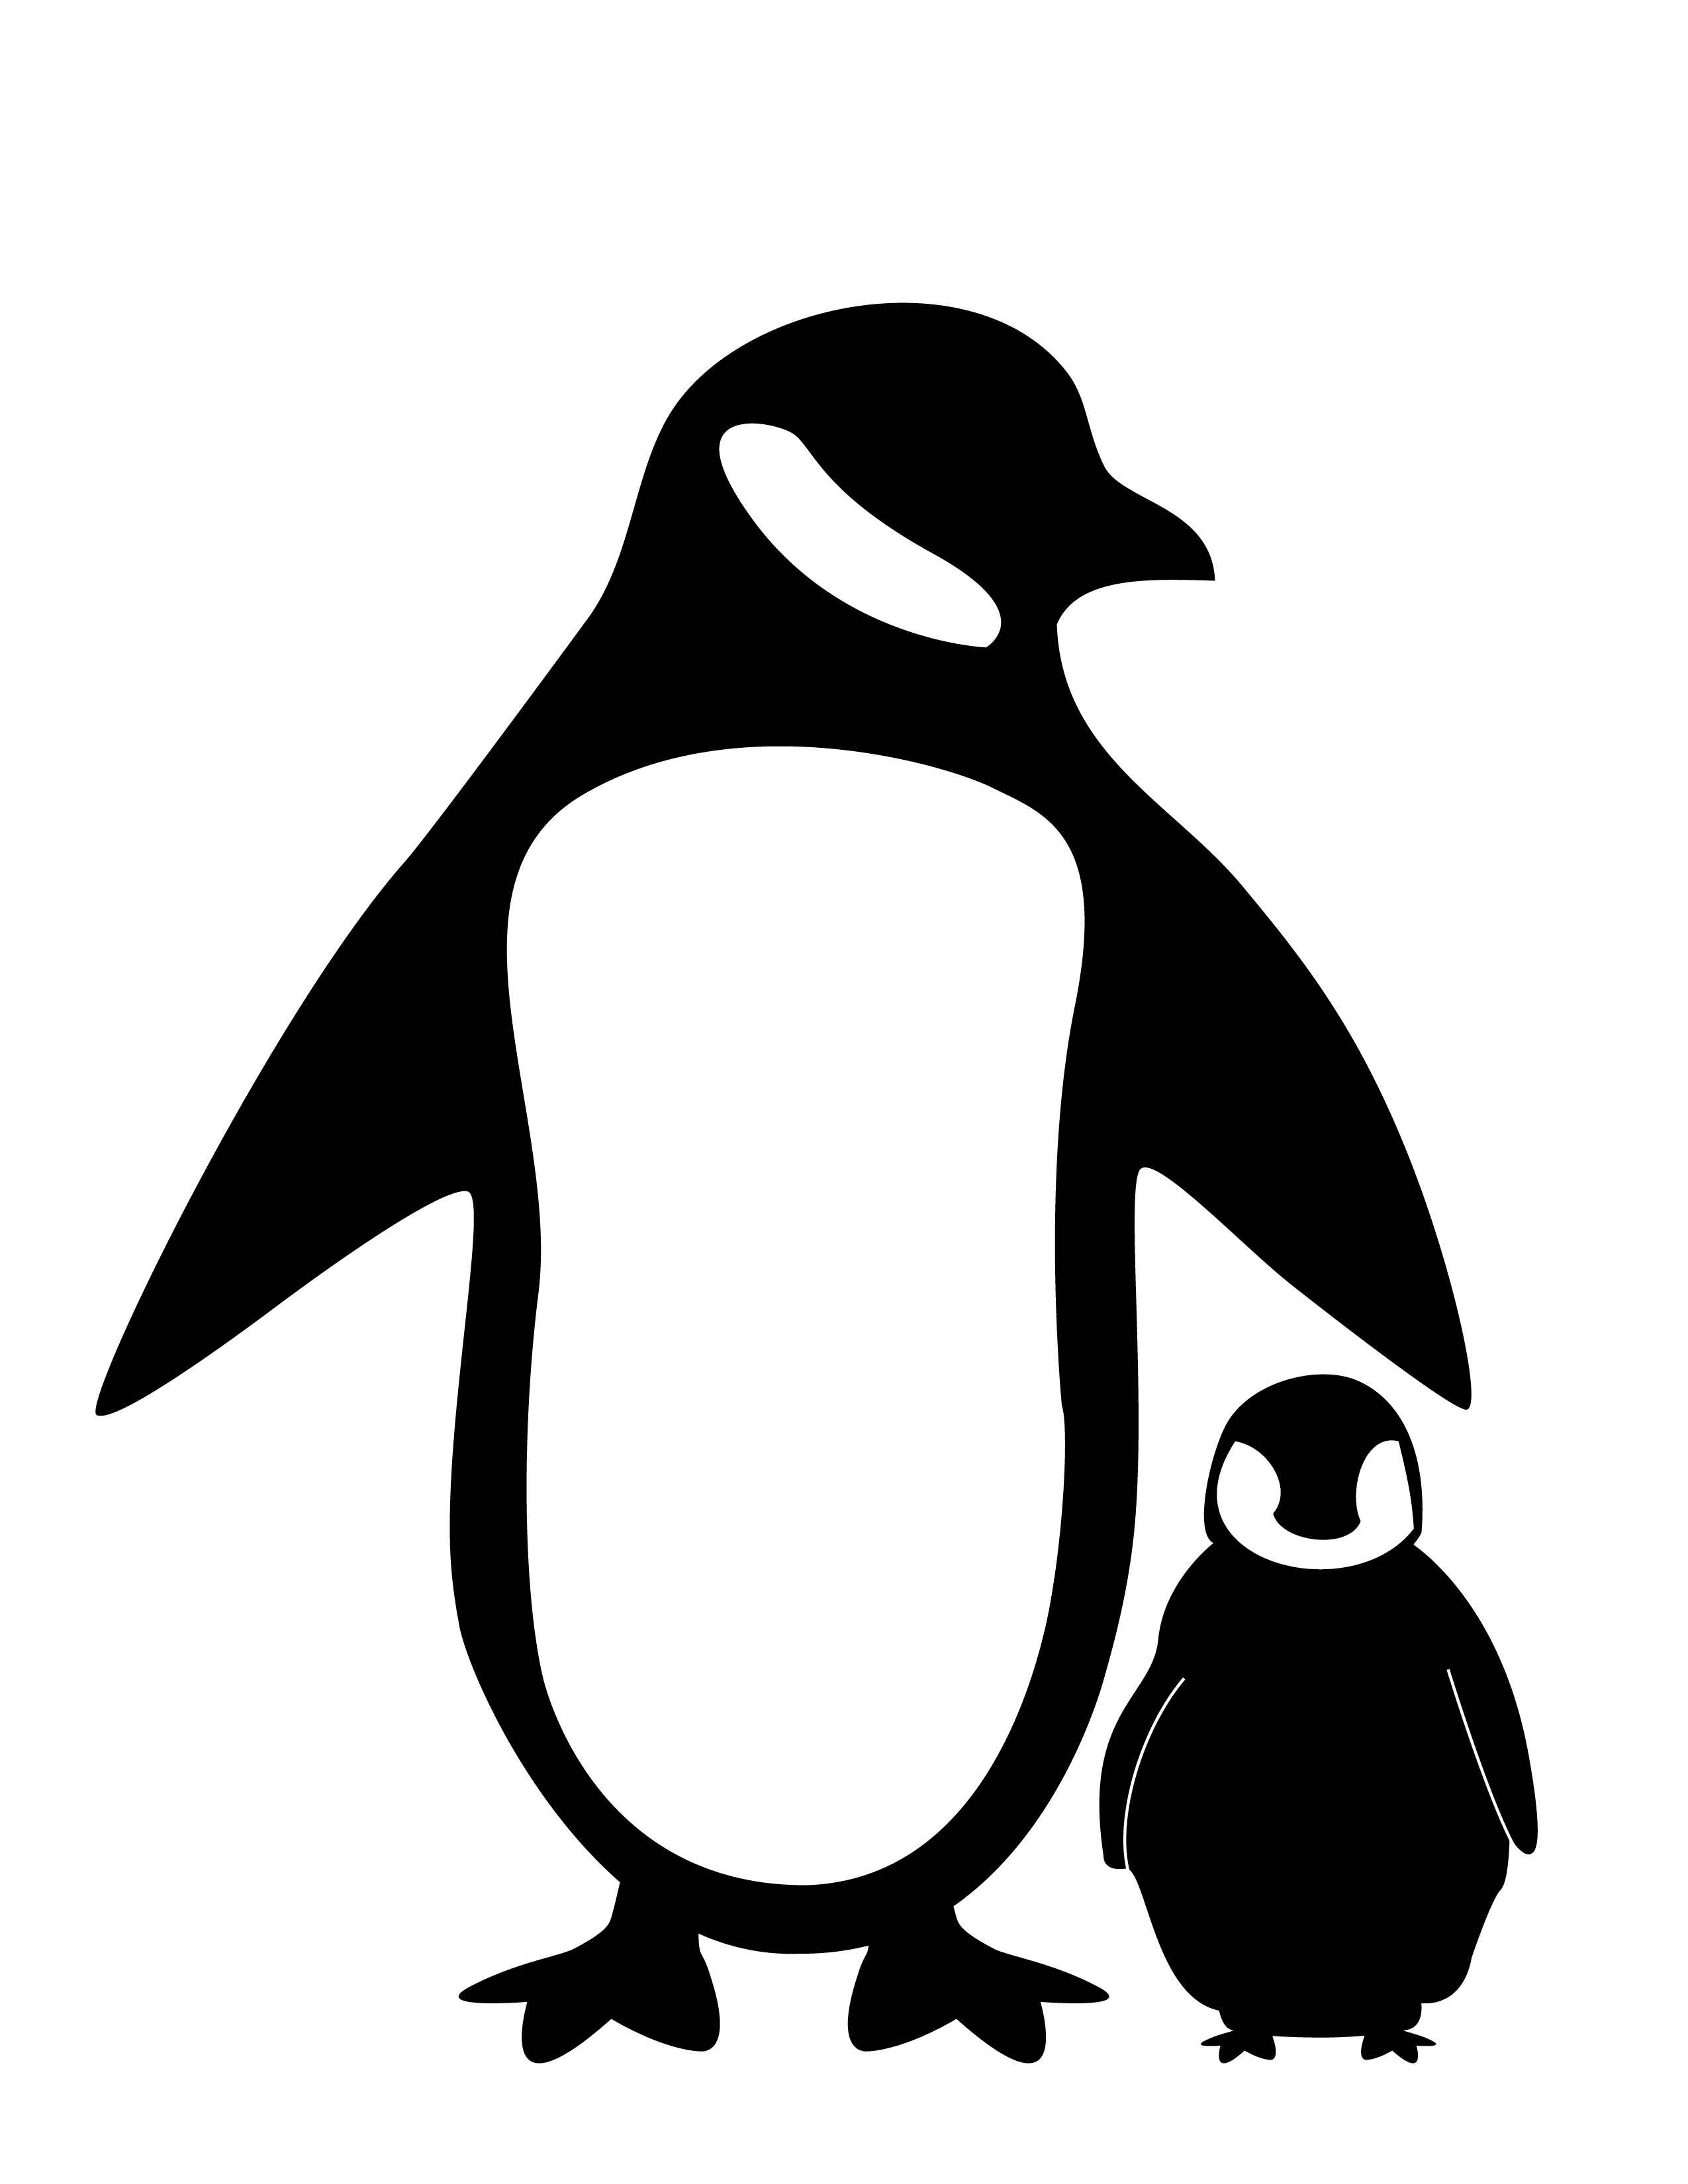 Black and White Penguins Logo - Penguin Silhouette Fc09 net black white penguin